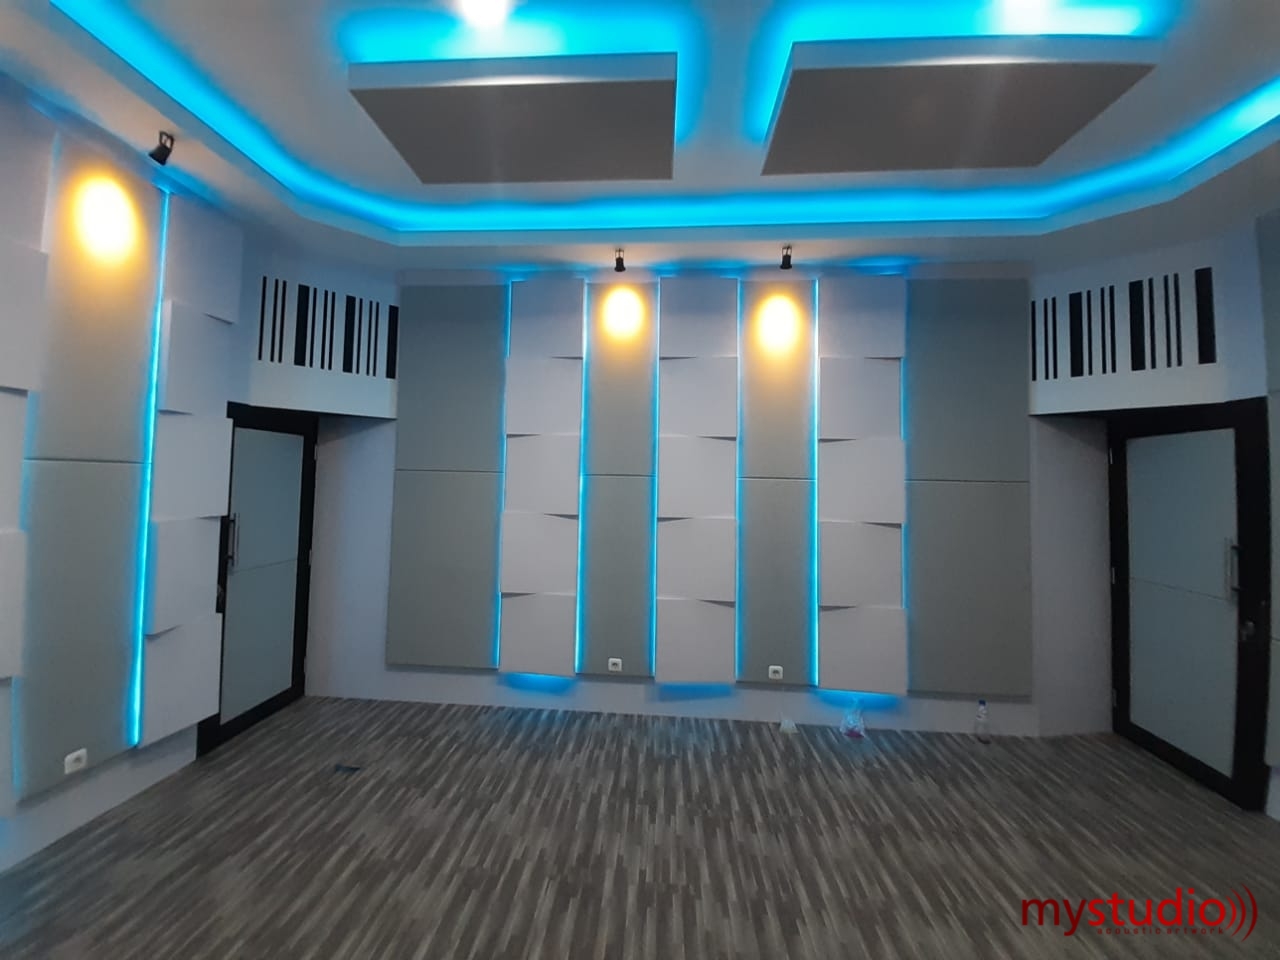 Dimensi Ideal Pembuatan Studio Musik | Jasa Pembuatan Studio Musik dan Akustik Ruang - Blog Mystudio